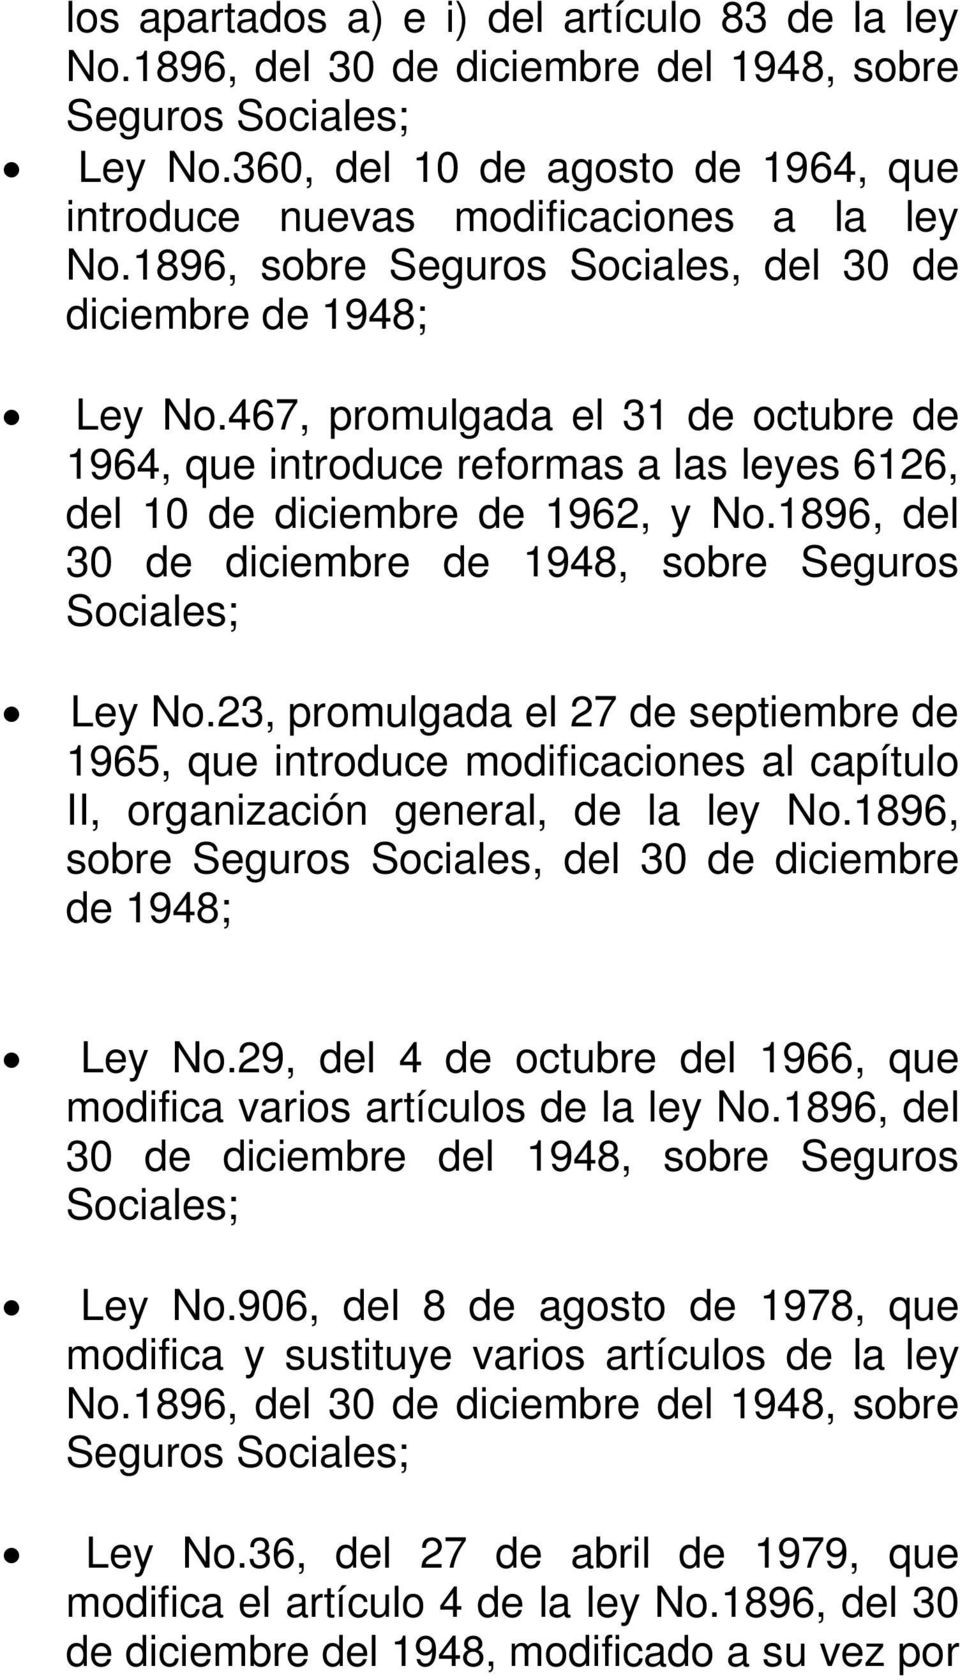 1896, del 30 de diciembre de 1948, sobre Seguros Sociales; Ley No.23, promulgada el 27 de septiembre de 1965, que introduce modificaciones al capítulo II, organización general, de la ley No.